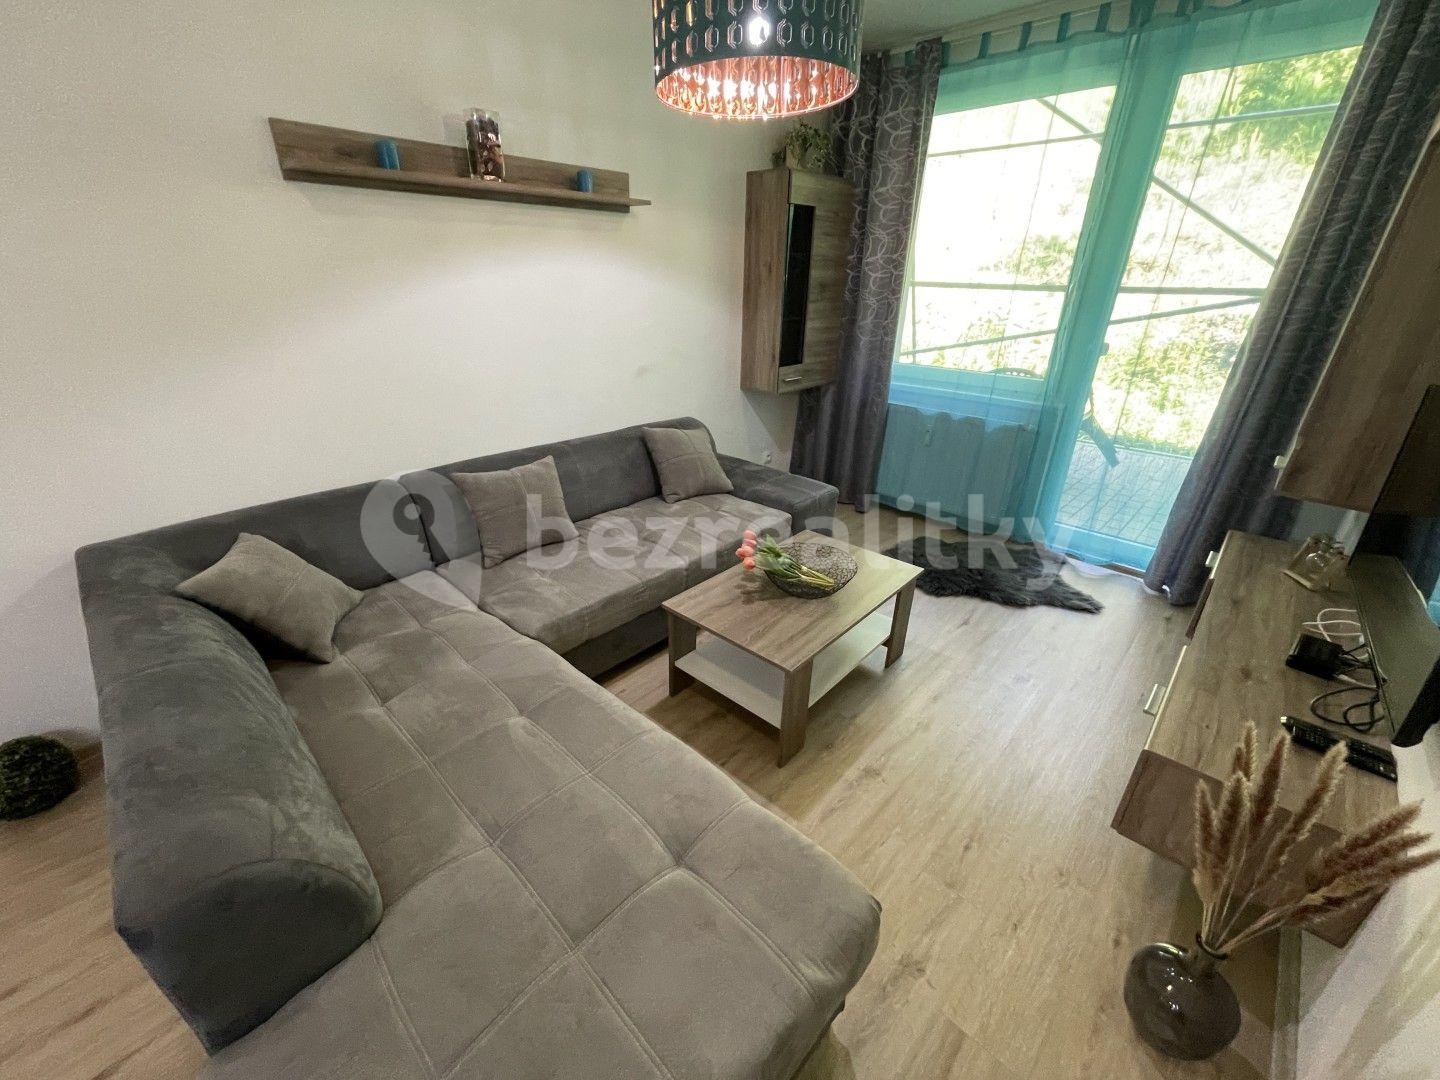 1 bedroom with open-plan kitchen flat for sale, 43 m², Všemina, Zlínský Region